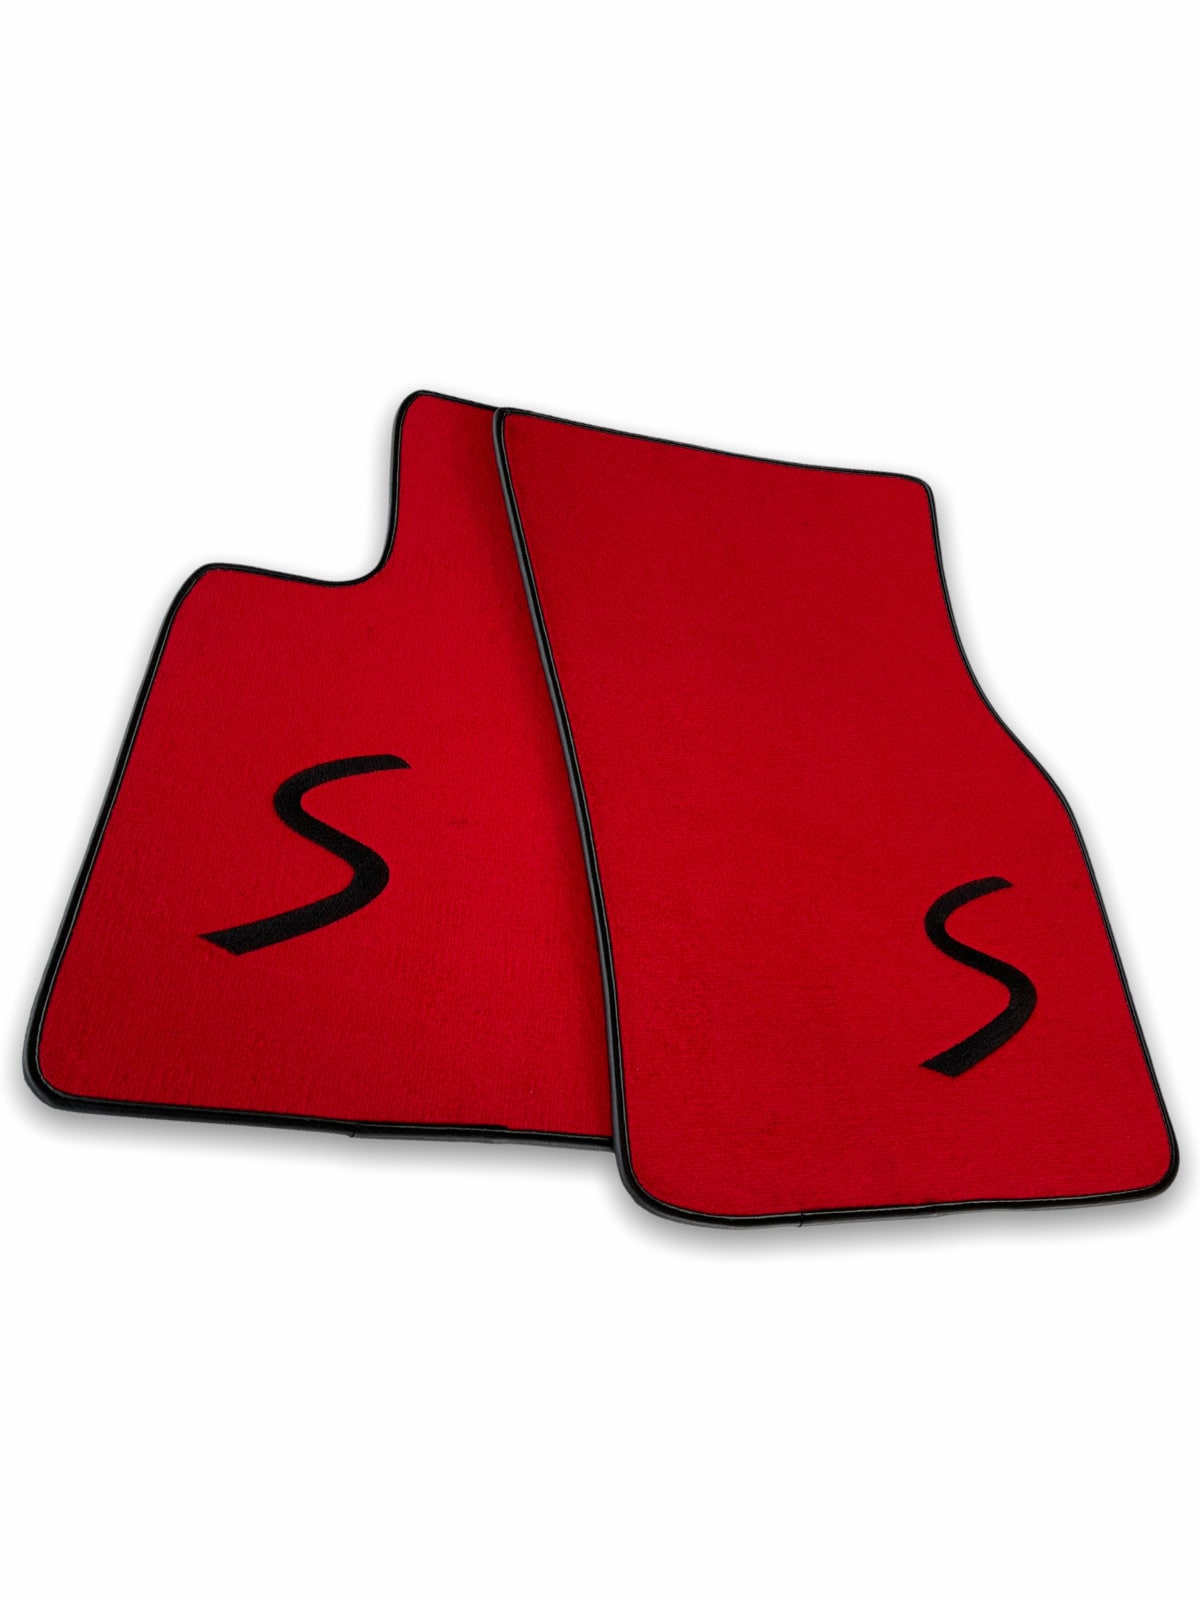 Fußmatten für Mini Cooper S Red AutoWin Premium Marke F54 Clubman / R56 /  R57 / F55 / F56 / F57 / Countryman R60 / One